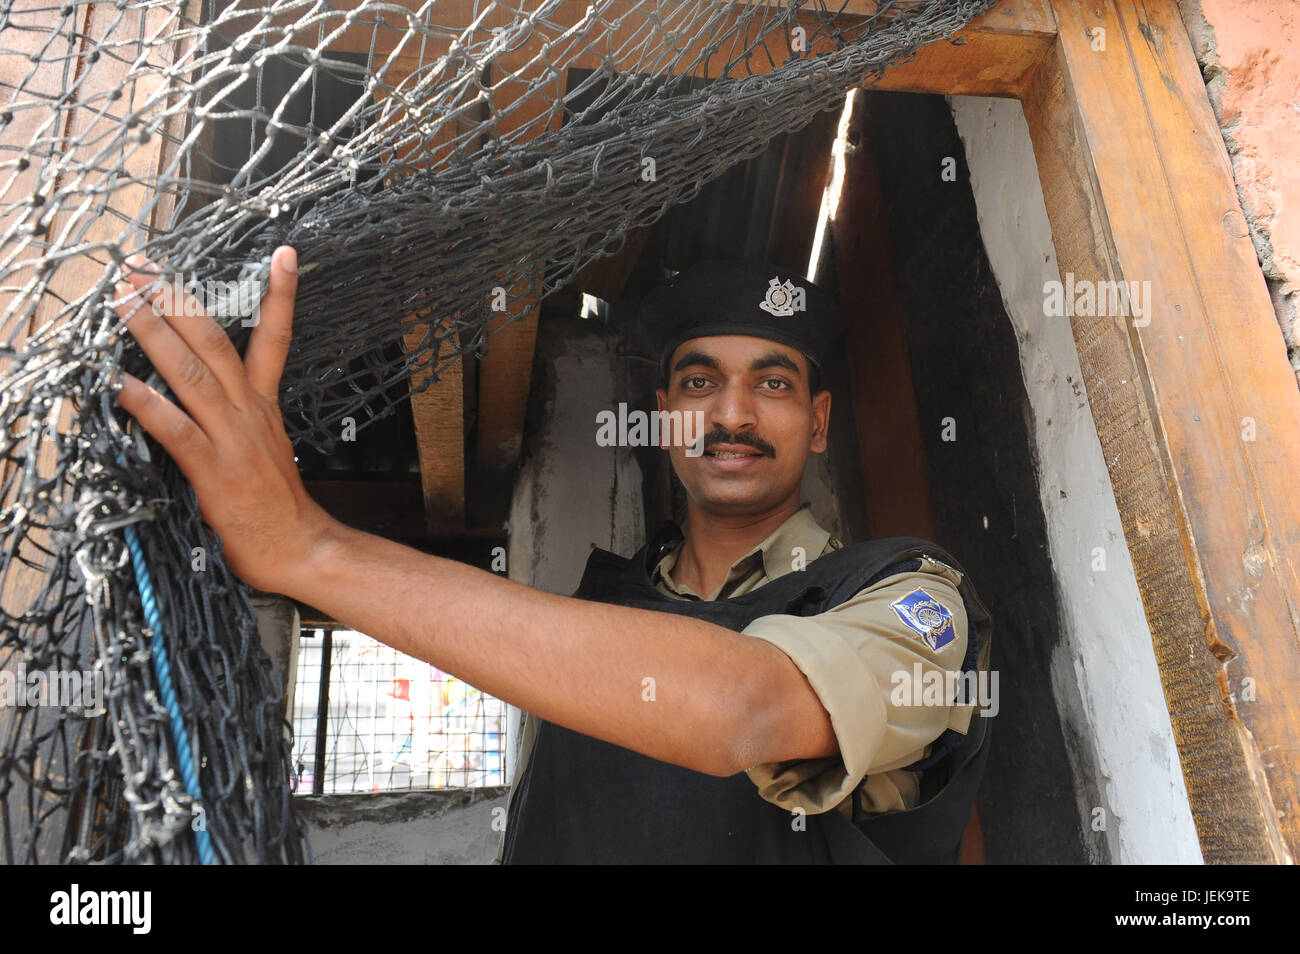 L'agent de police dans le bâtiment, à Srinagar, Jammu Cachemire, l'Inde, l'Asie Banque D'Images